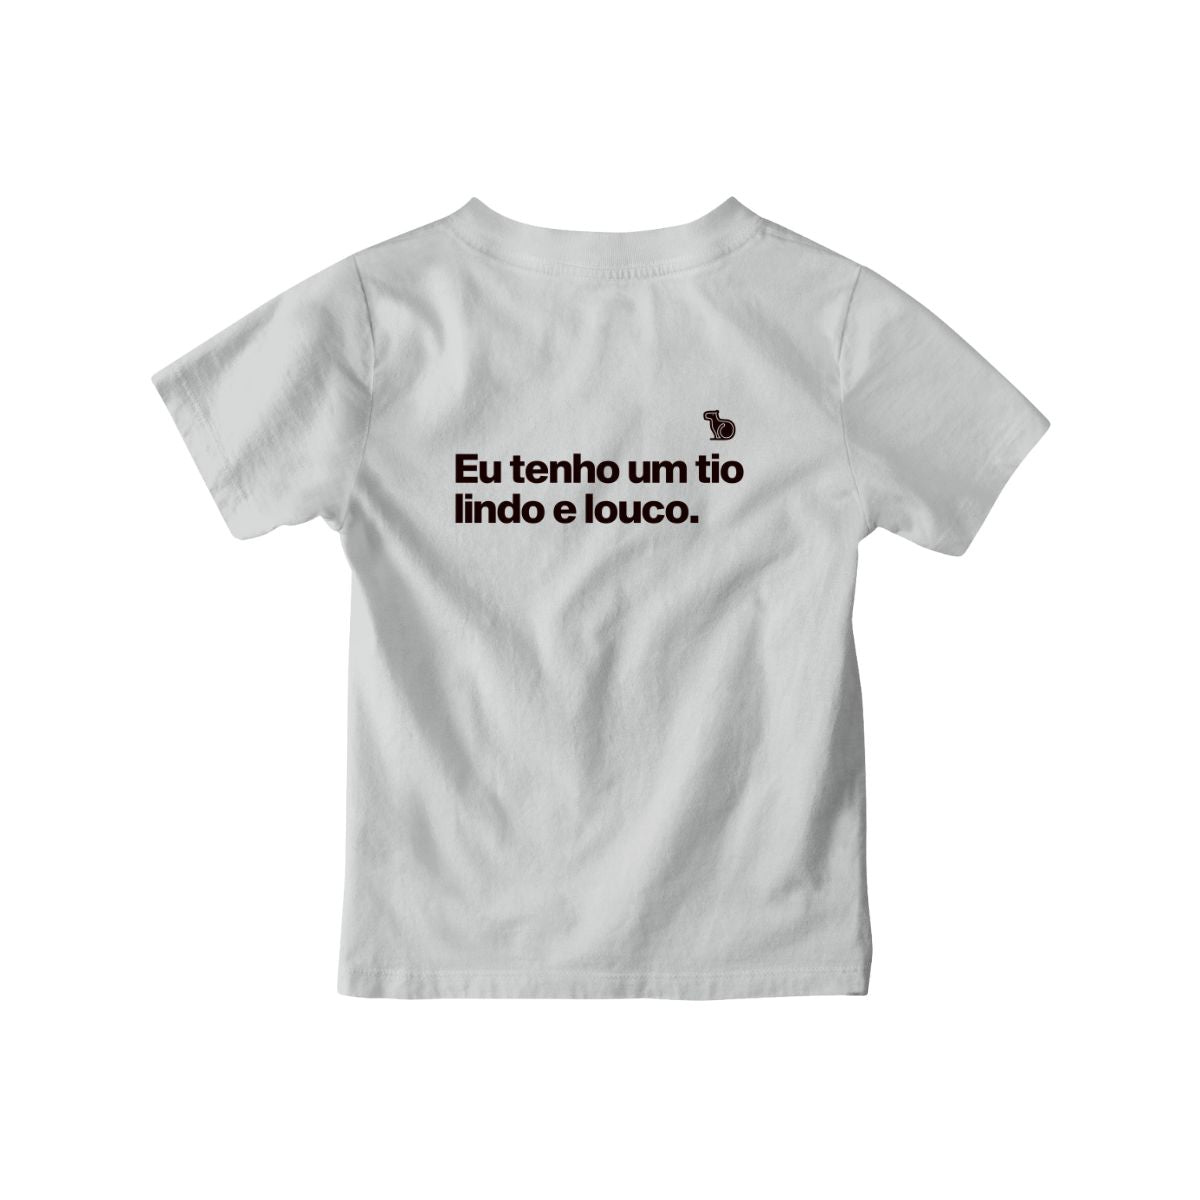 Camiseta infantil com a frase "Eu tenho um tio lindo e louco." na cor cinza.